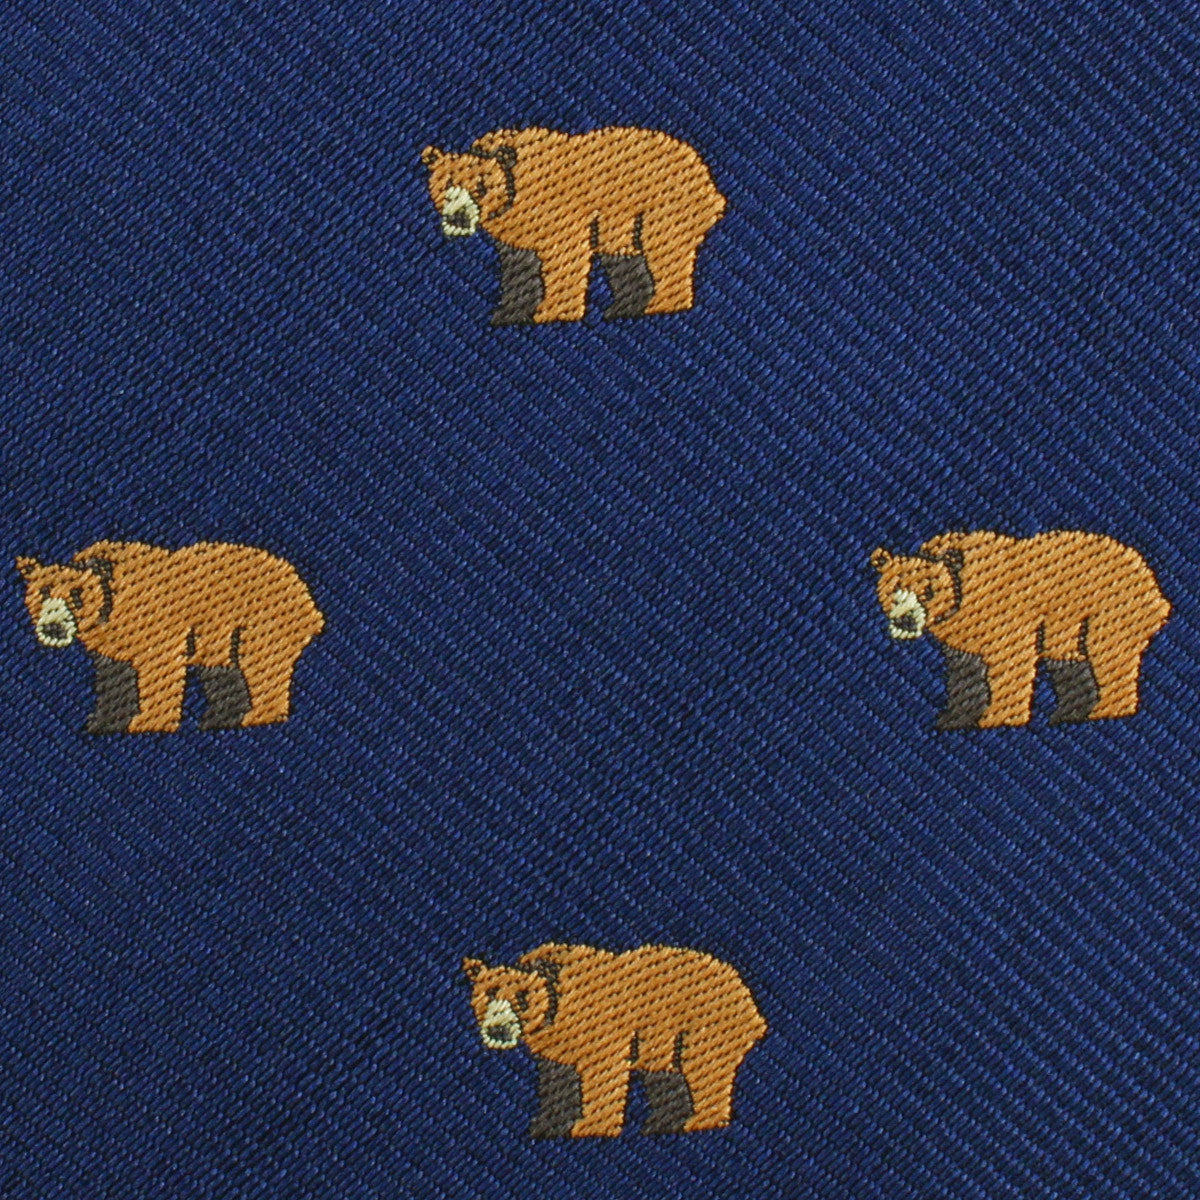 Lazy Bear Fabric Kids Bowtie